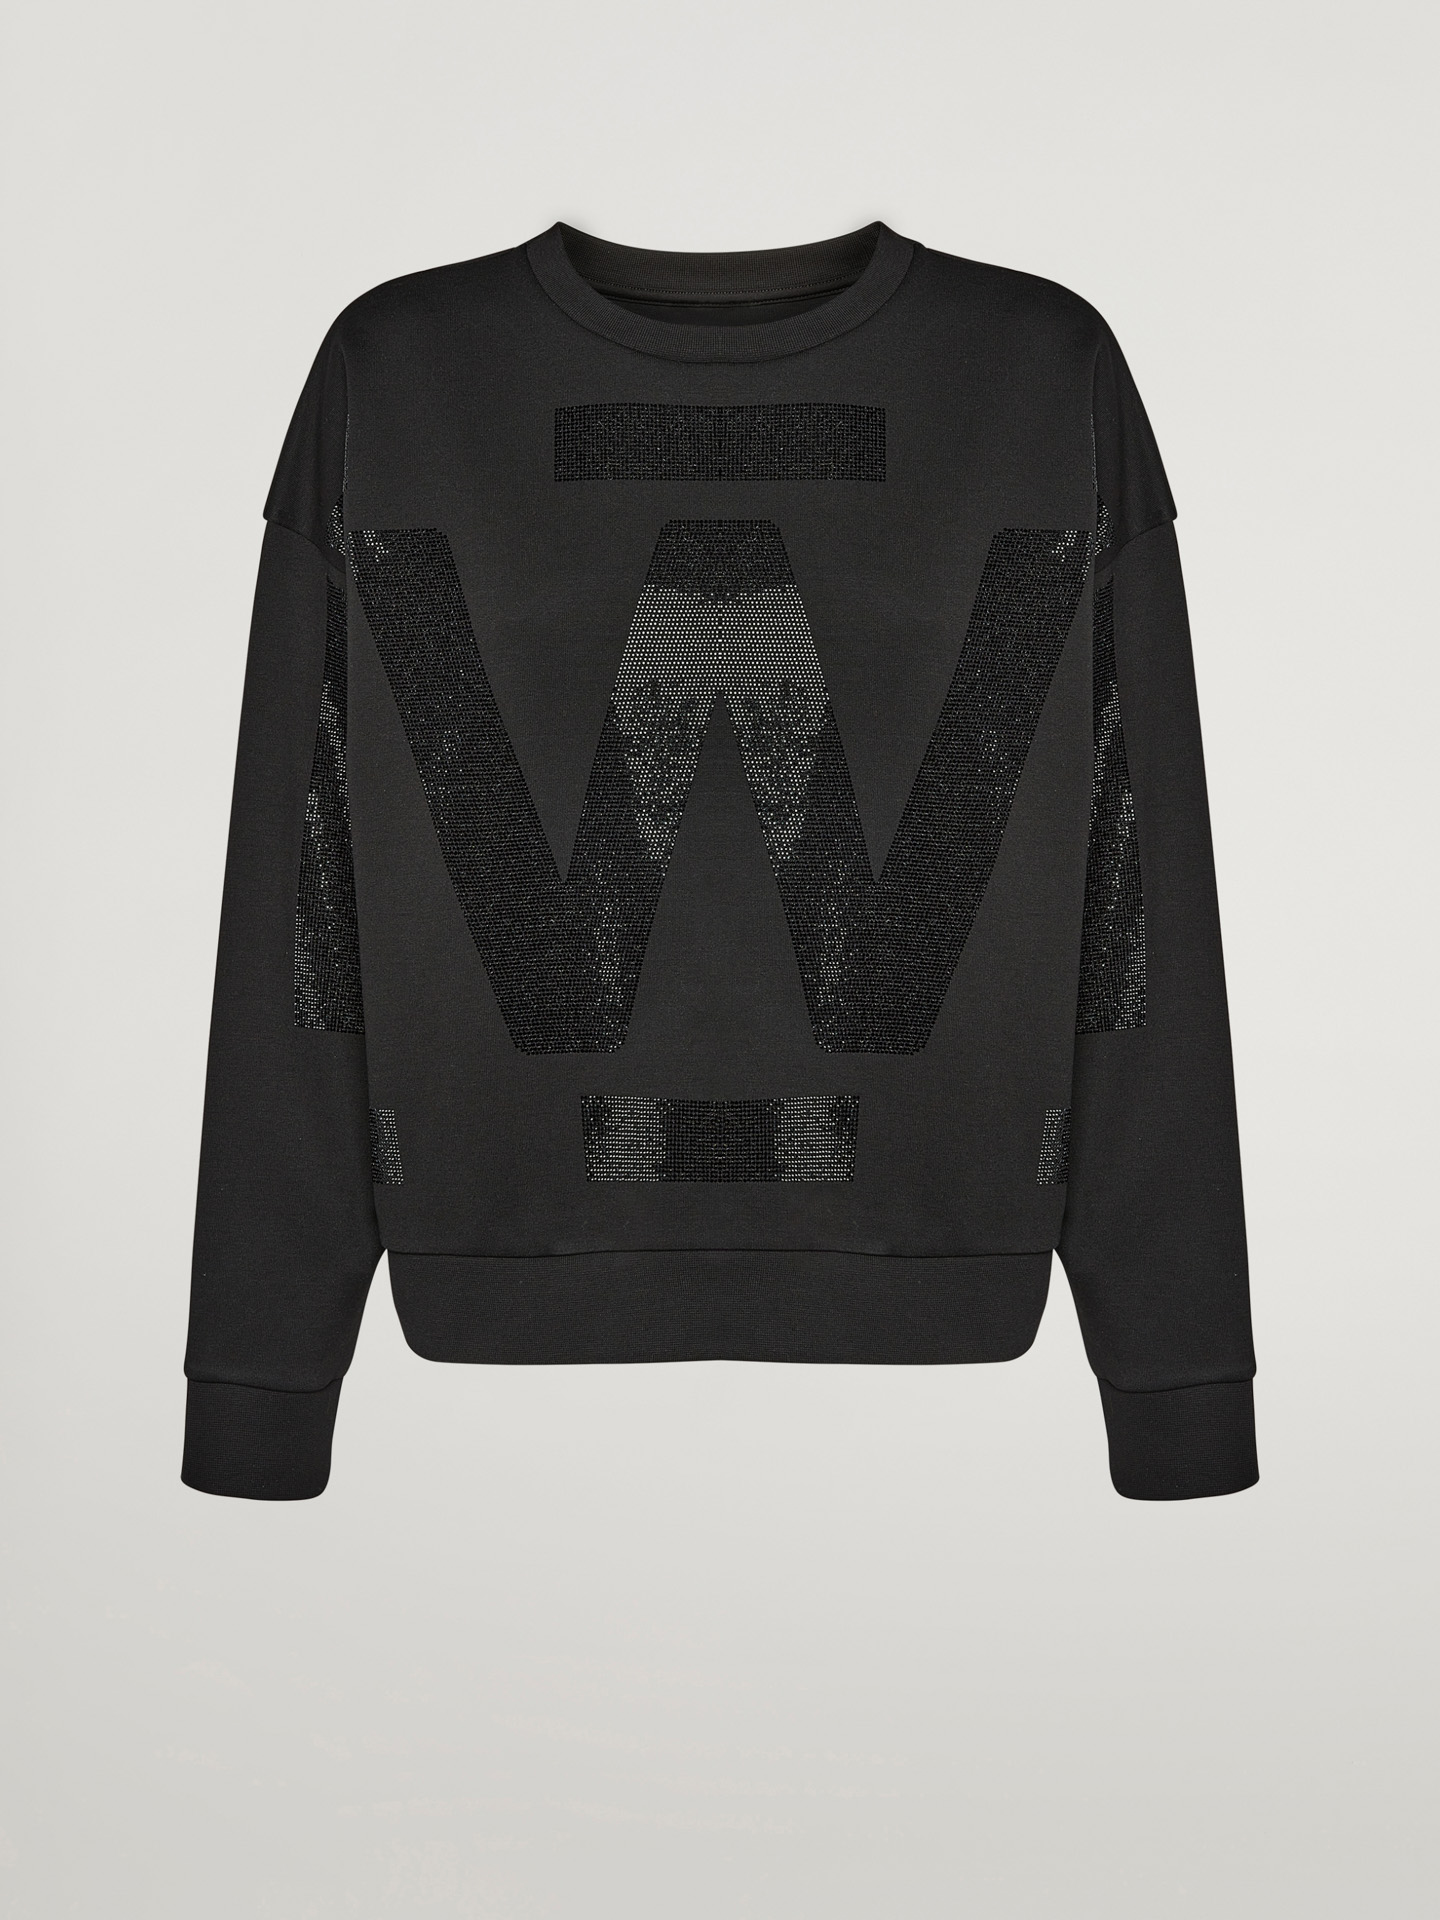 Wolford - Sweater with Crystals, Frau, black/black, Größe: S günstig online kaufen